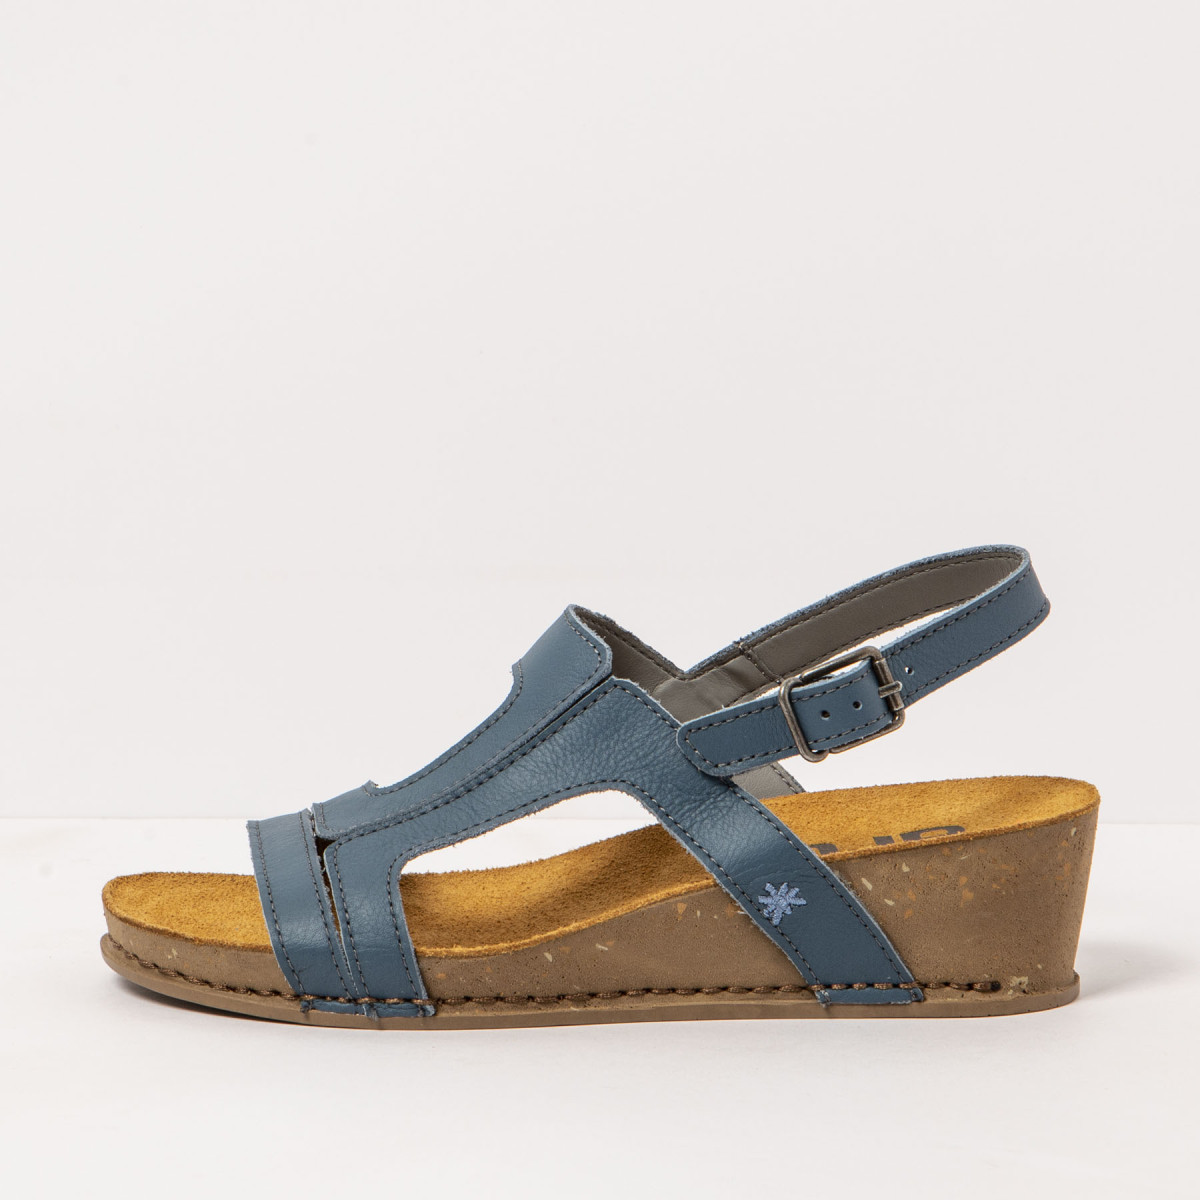 Sandales compensées en cuir talon liège - Bleu - art